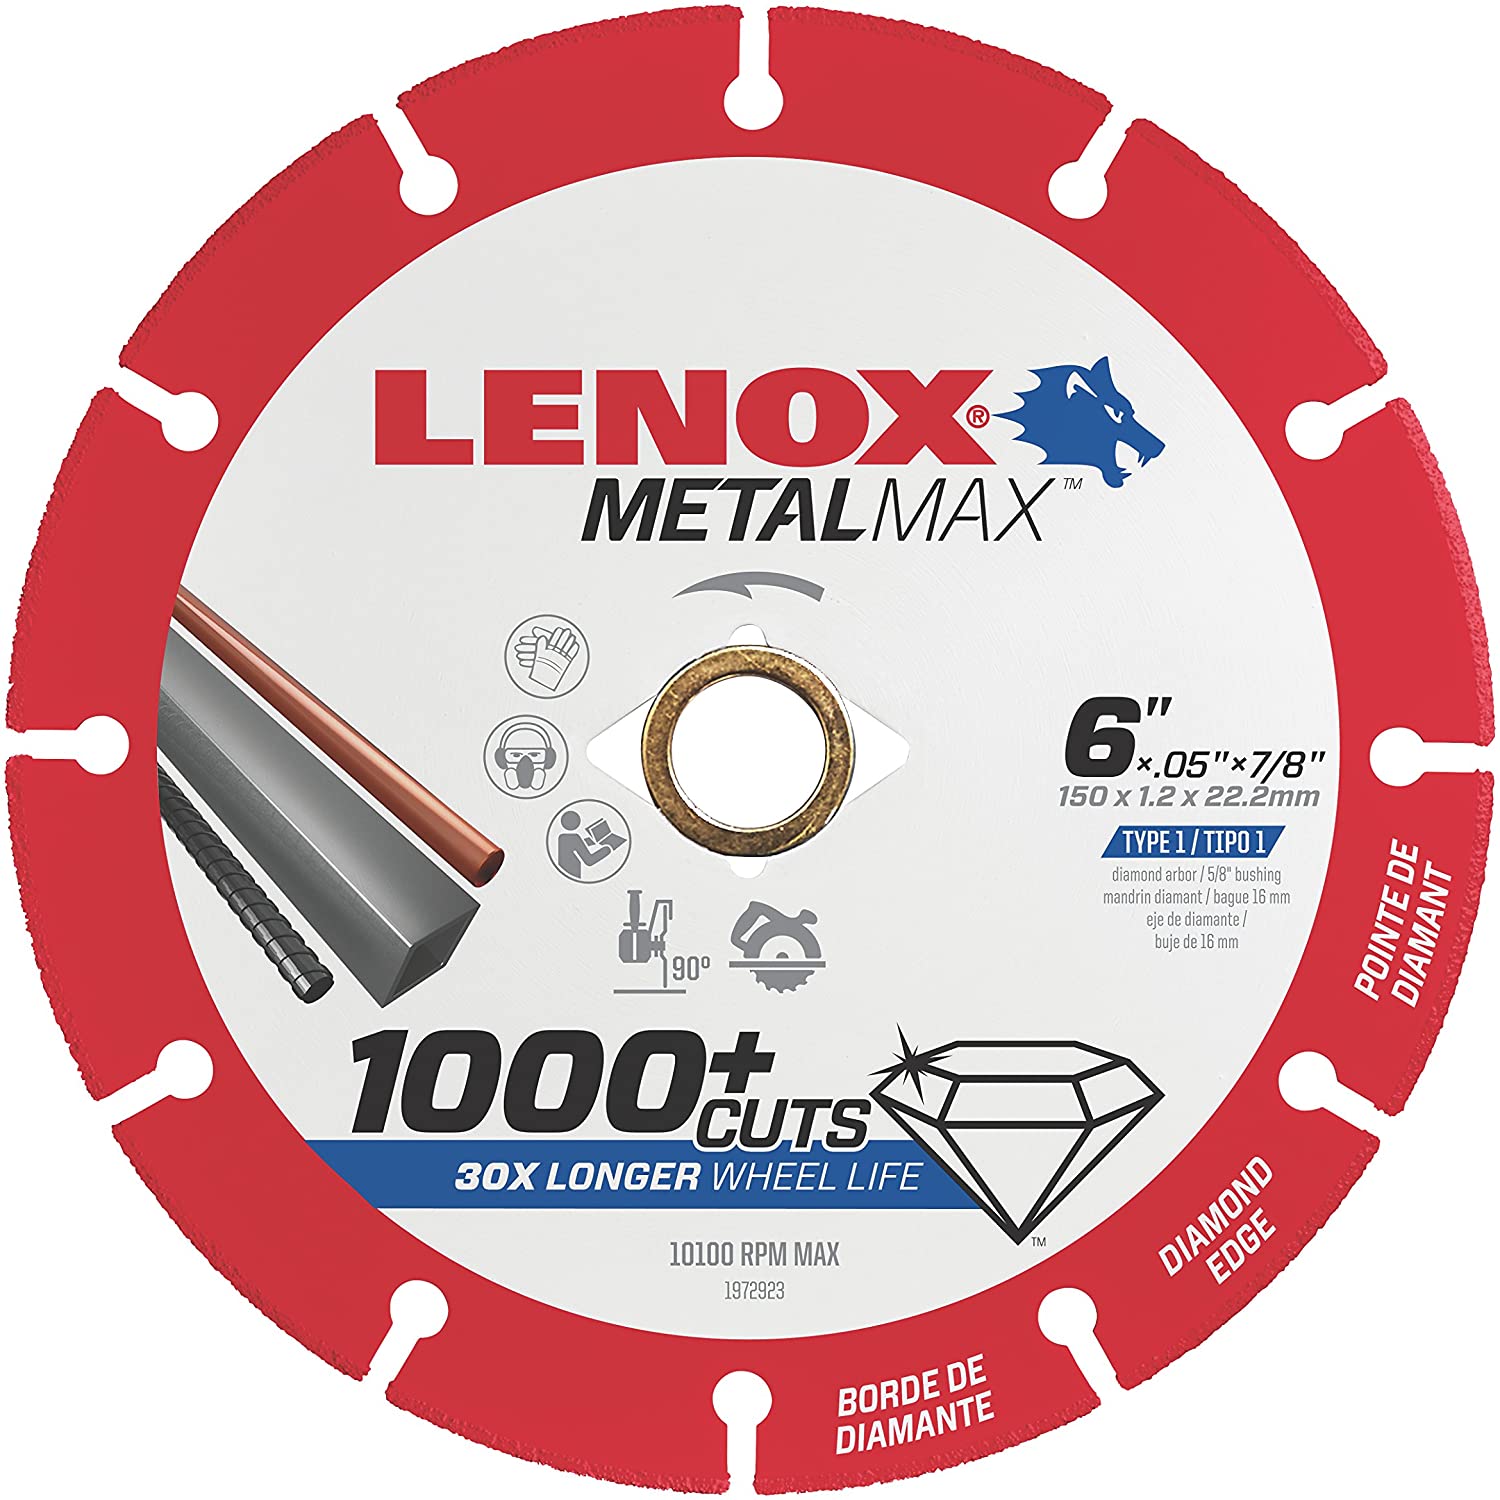 6" Metal Max Wheel